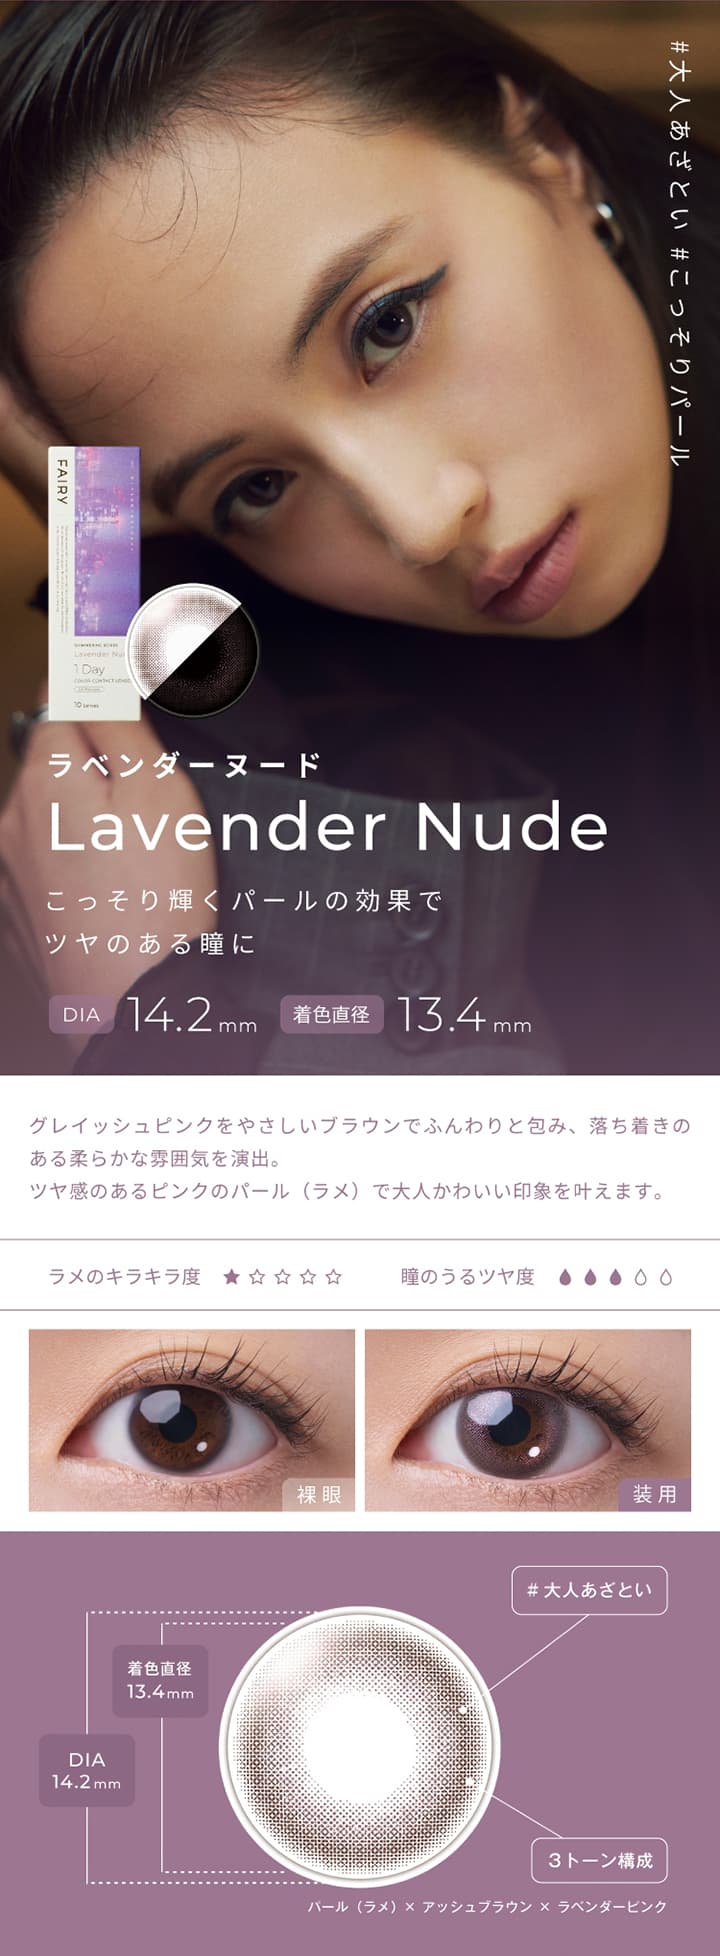 フェアリーシマーリングシリーズ  -ラベンダーヌード (Lavender Nude)-